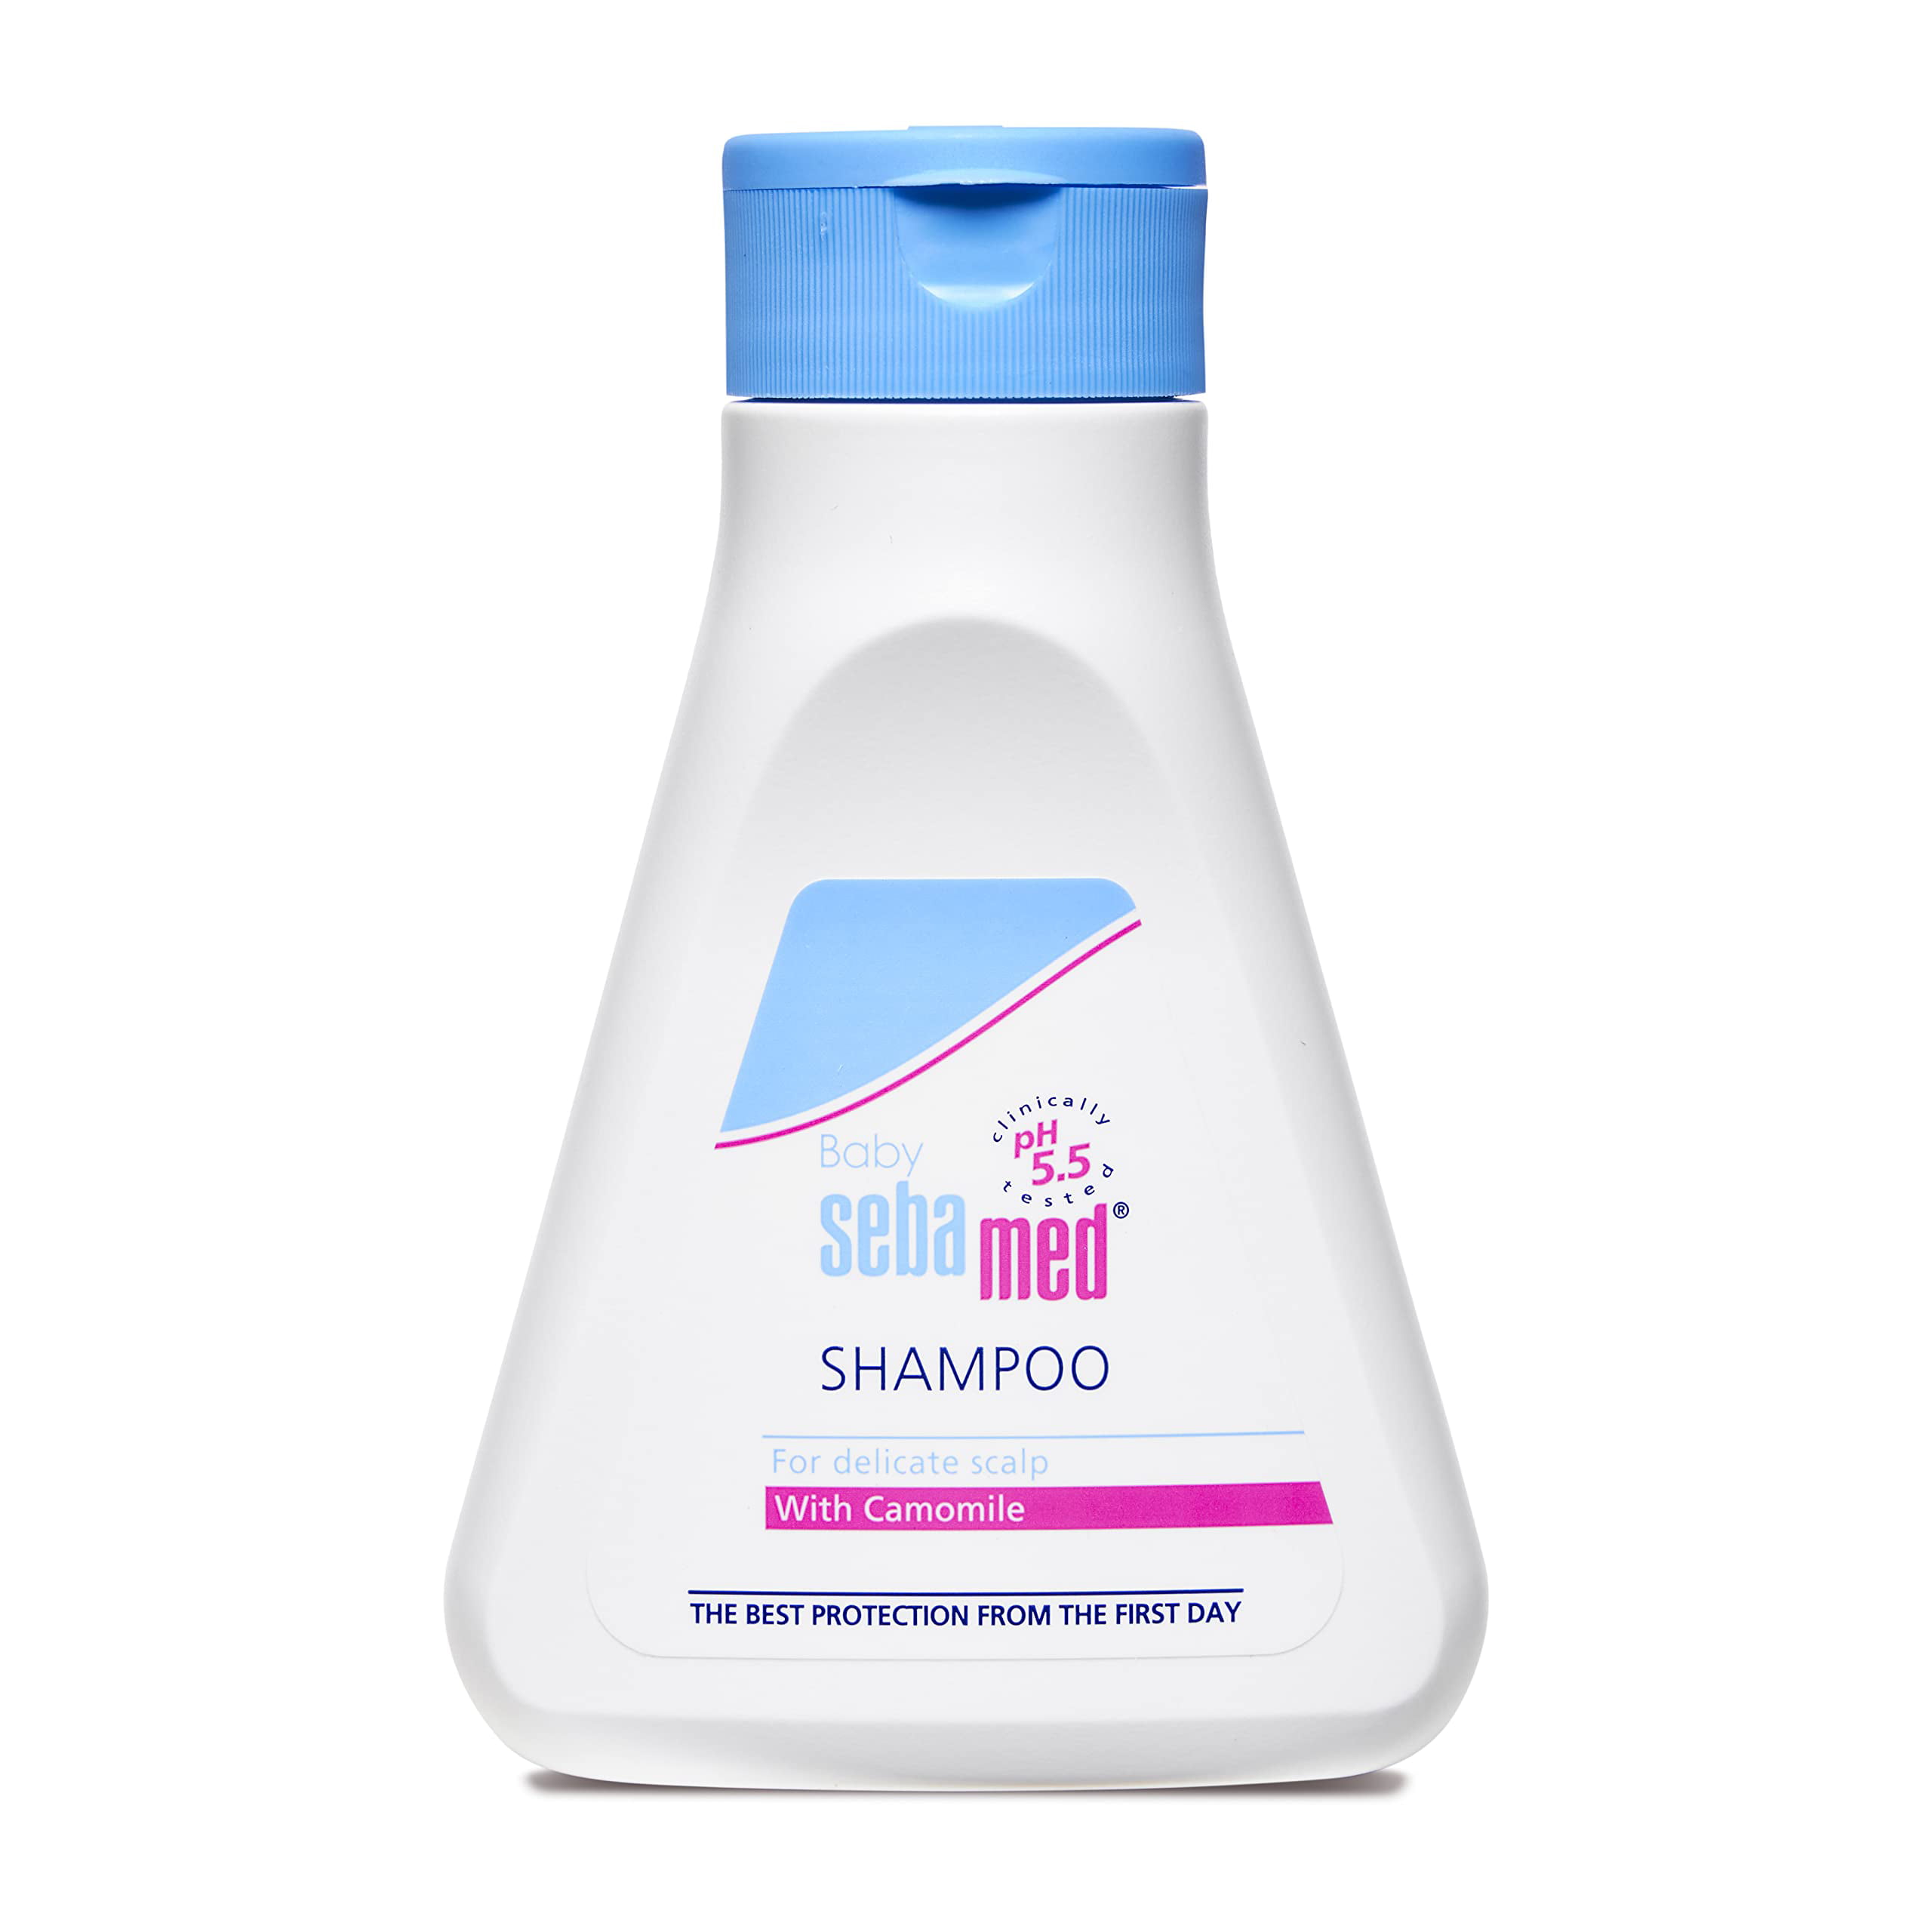 Agurk Håndbog I modsætning til Sebamed Baby Shampoo 150ml|Ph 5.5| Camomile|Natural moisturisers|No tears  formula|For delicate scalp - Walmart.com